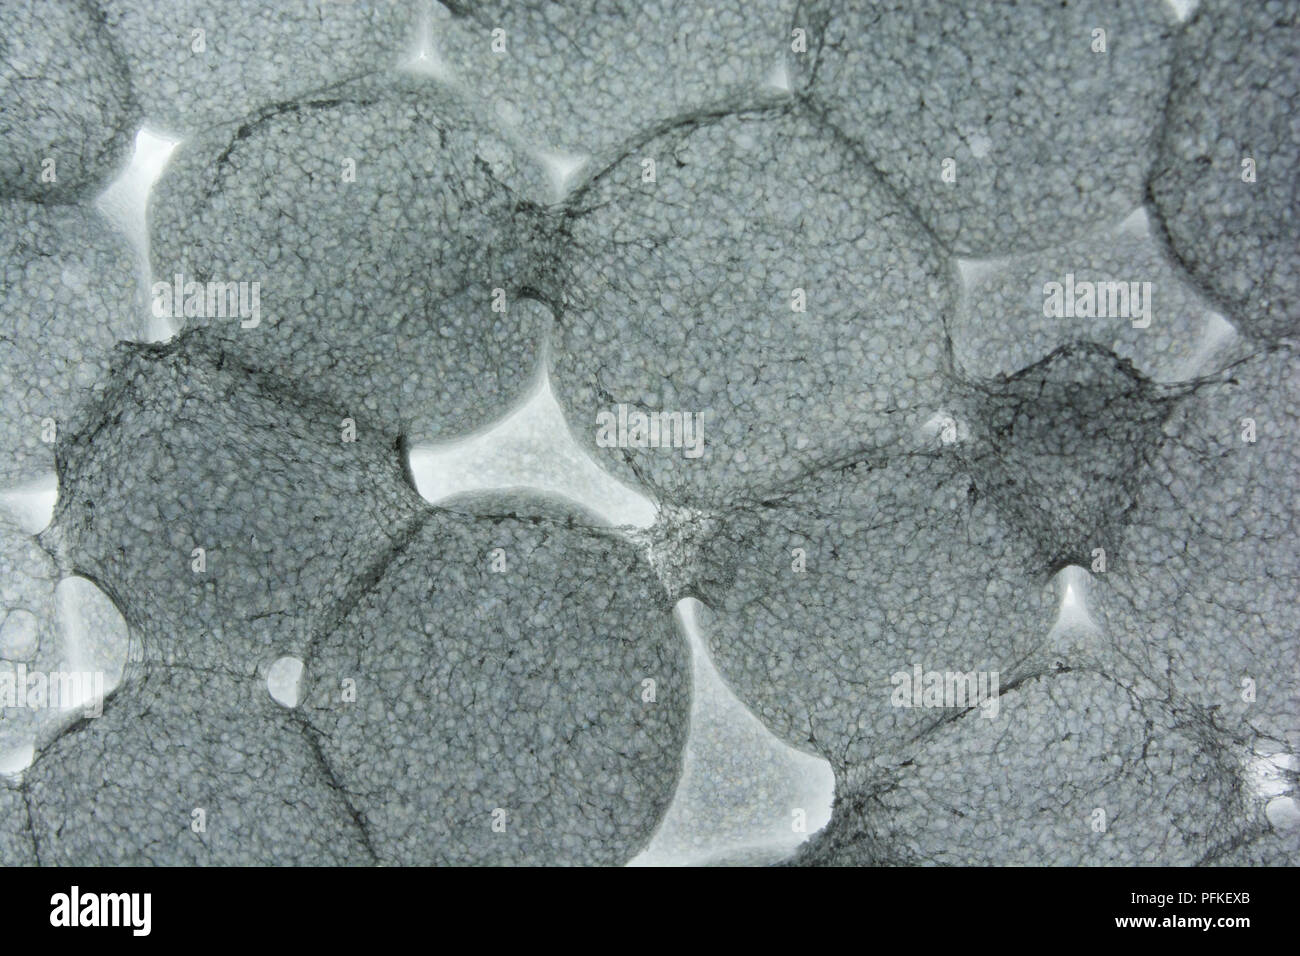 Makro Foto EPS/Styropor zeigen einige Verbindungen zwischen Polystyrol Granulat (Größen ca. 3-5 mm). Fast Bakterien - wie Gefühl zu Ihnen Stockfoto